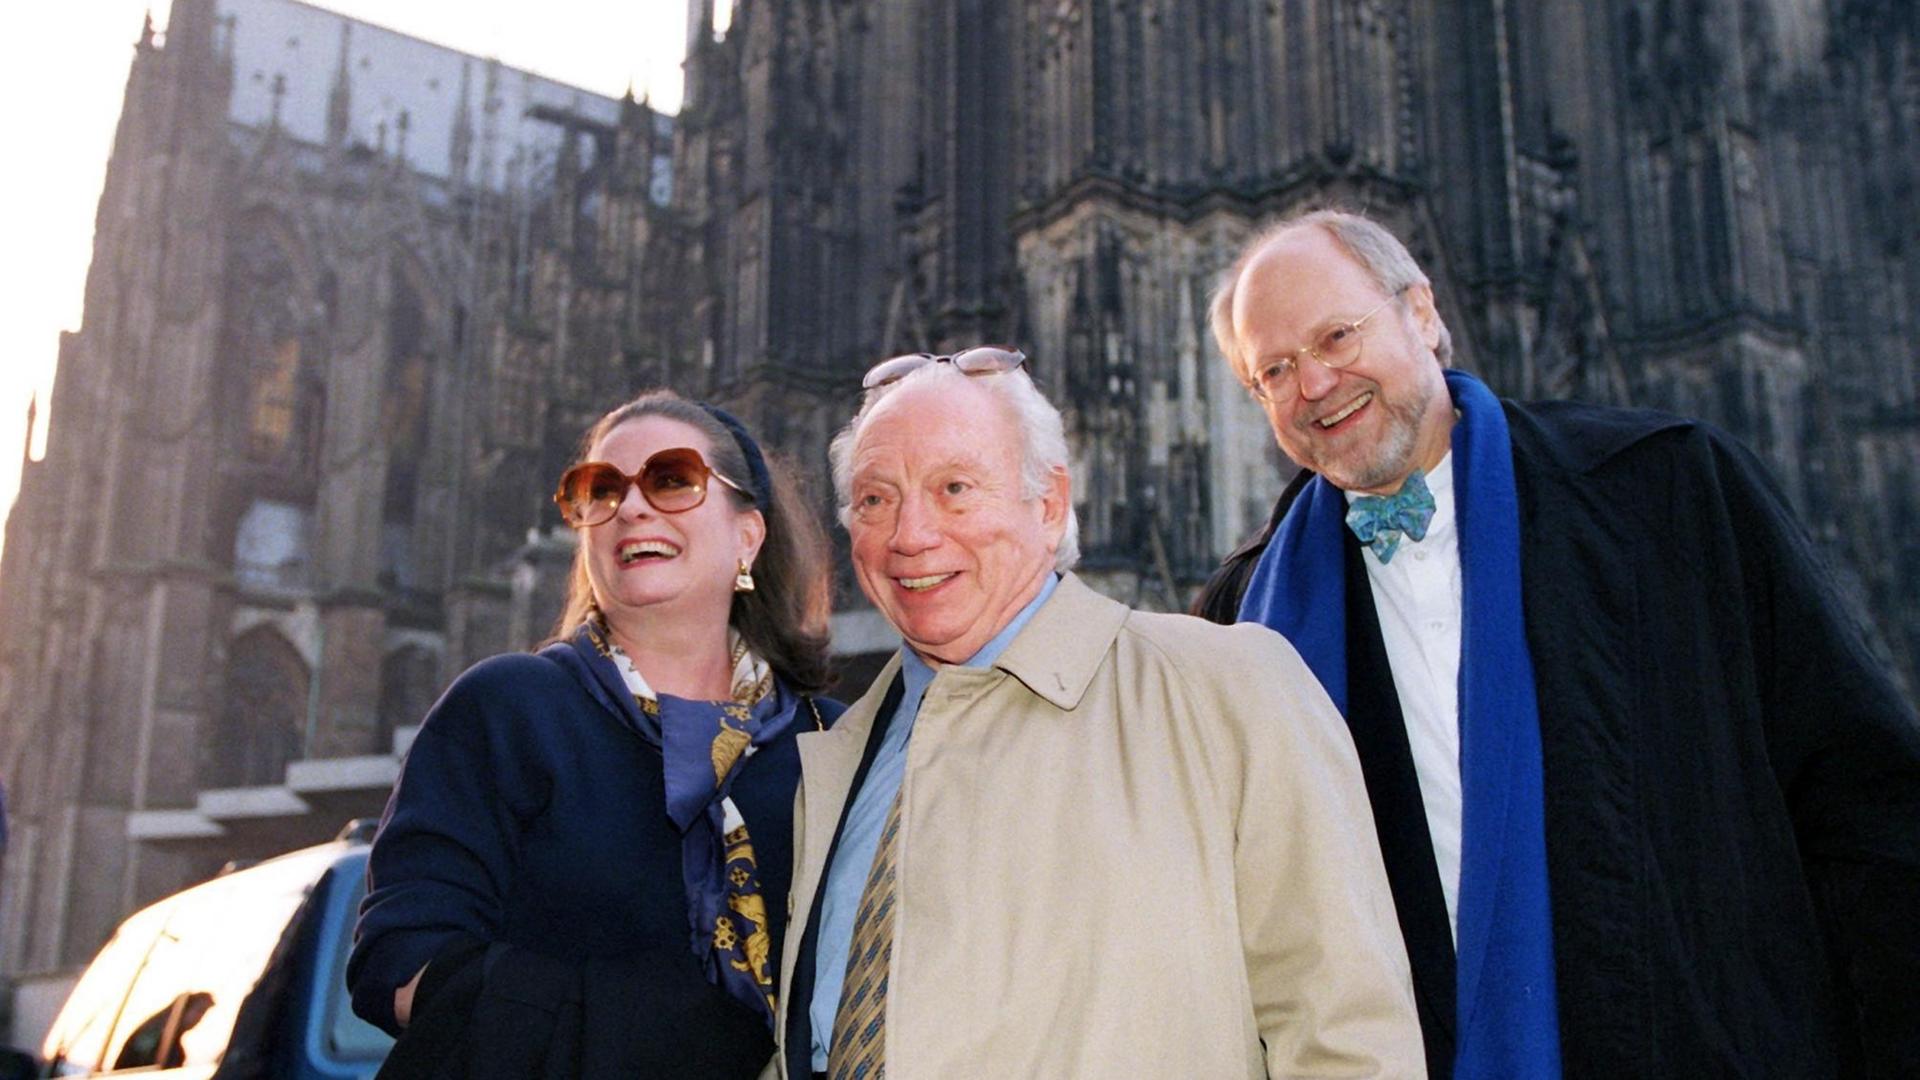 Ein grauhaariger alter Mann mit Brille auf der Stirn steht, umgeben von zwei anderen, wie er lachenden, Menschen, vor dem Kölner Dom.